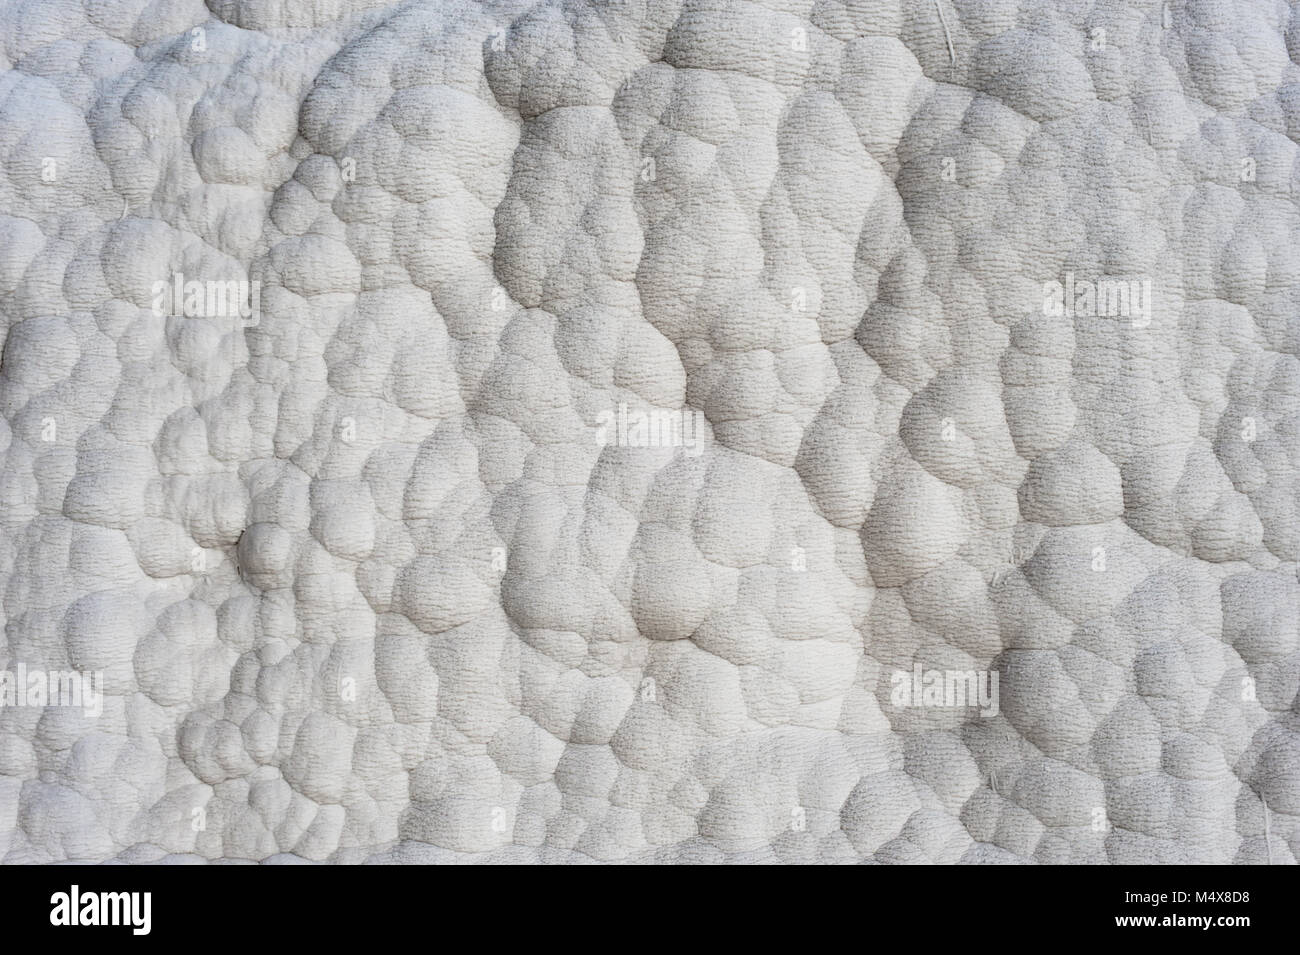 Die ikonische, weiß mineralische Ablagerungen bei Pamukkale, Türkei. Stockfoto